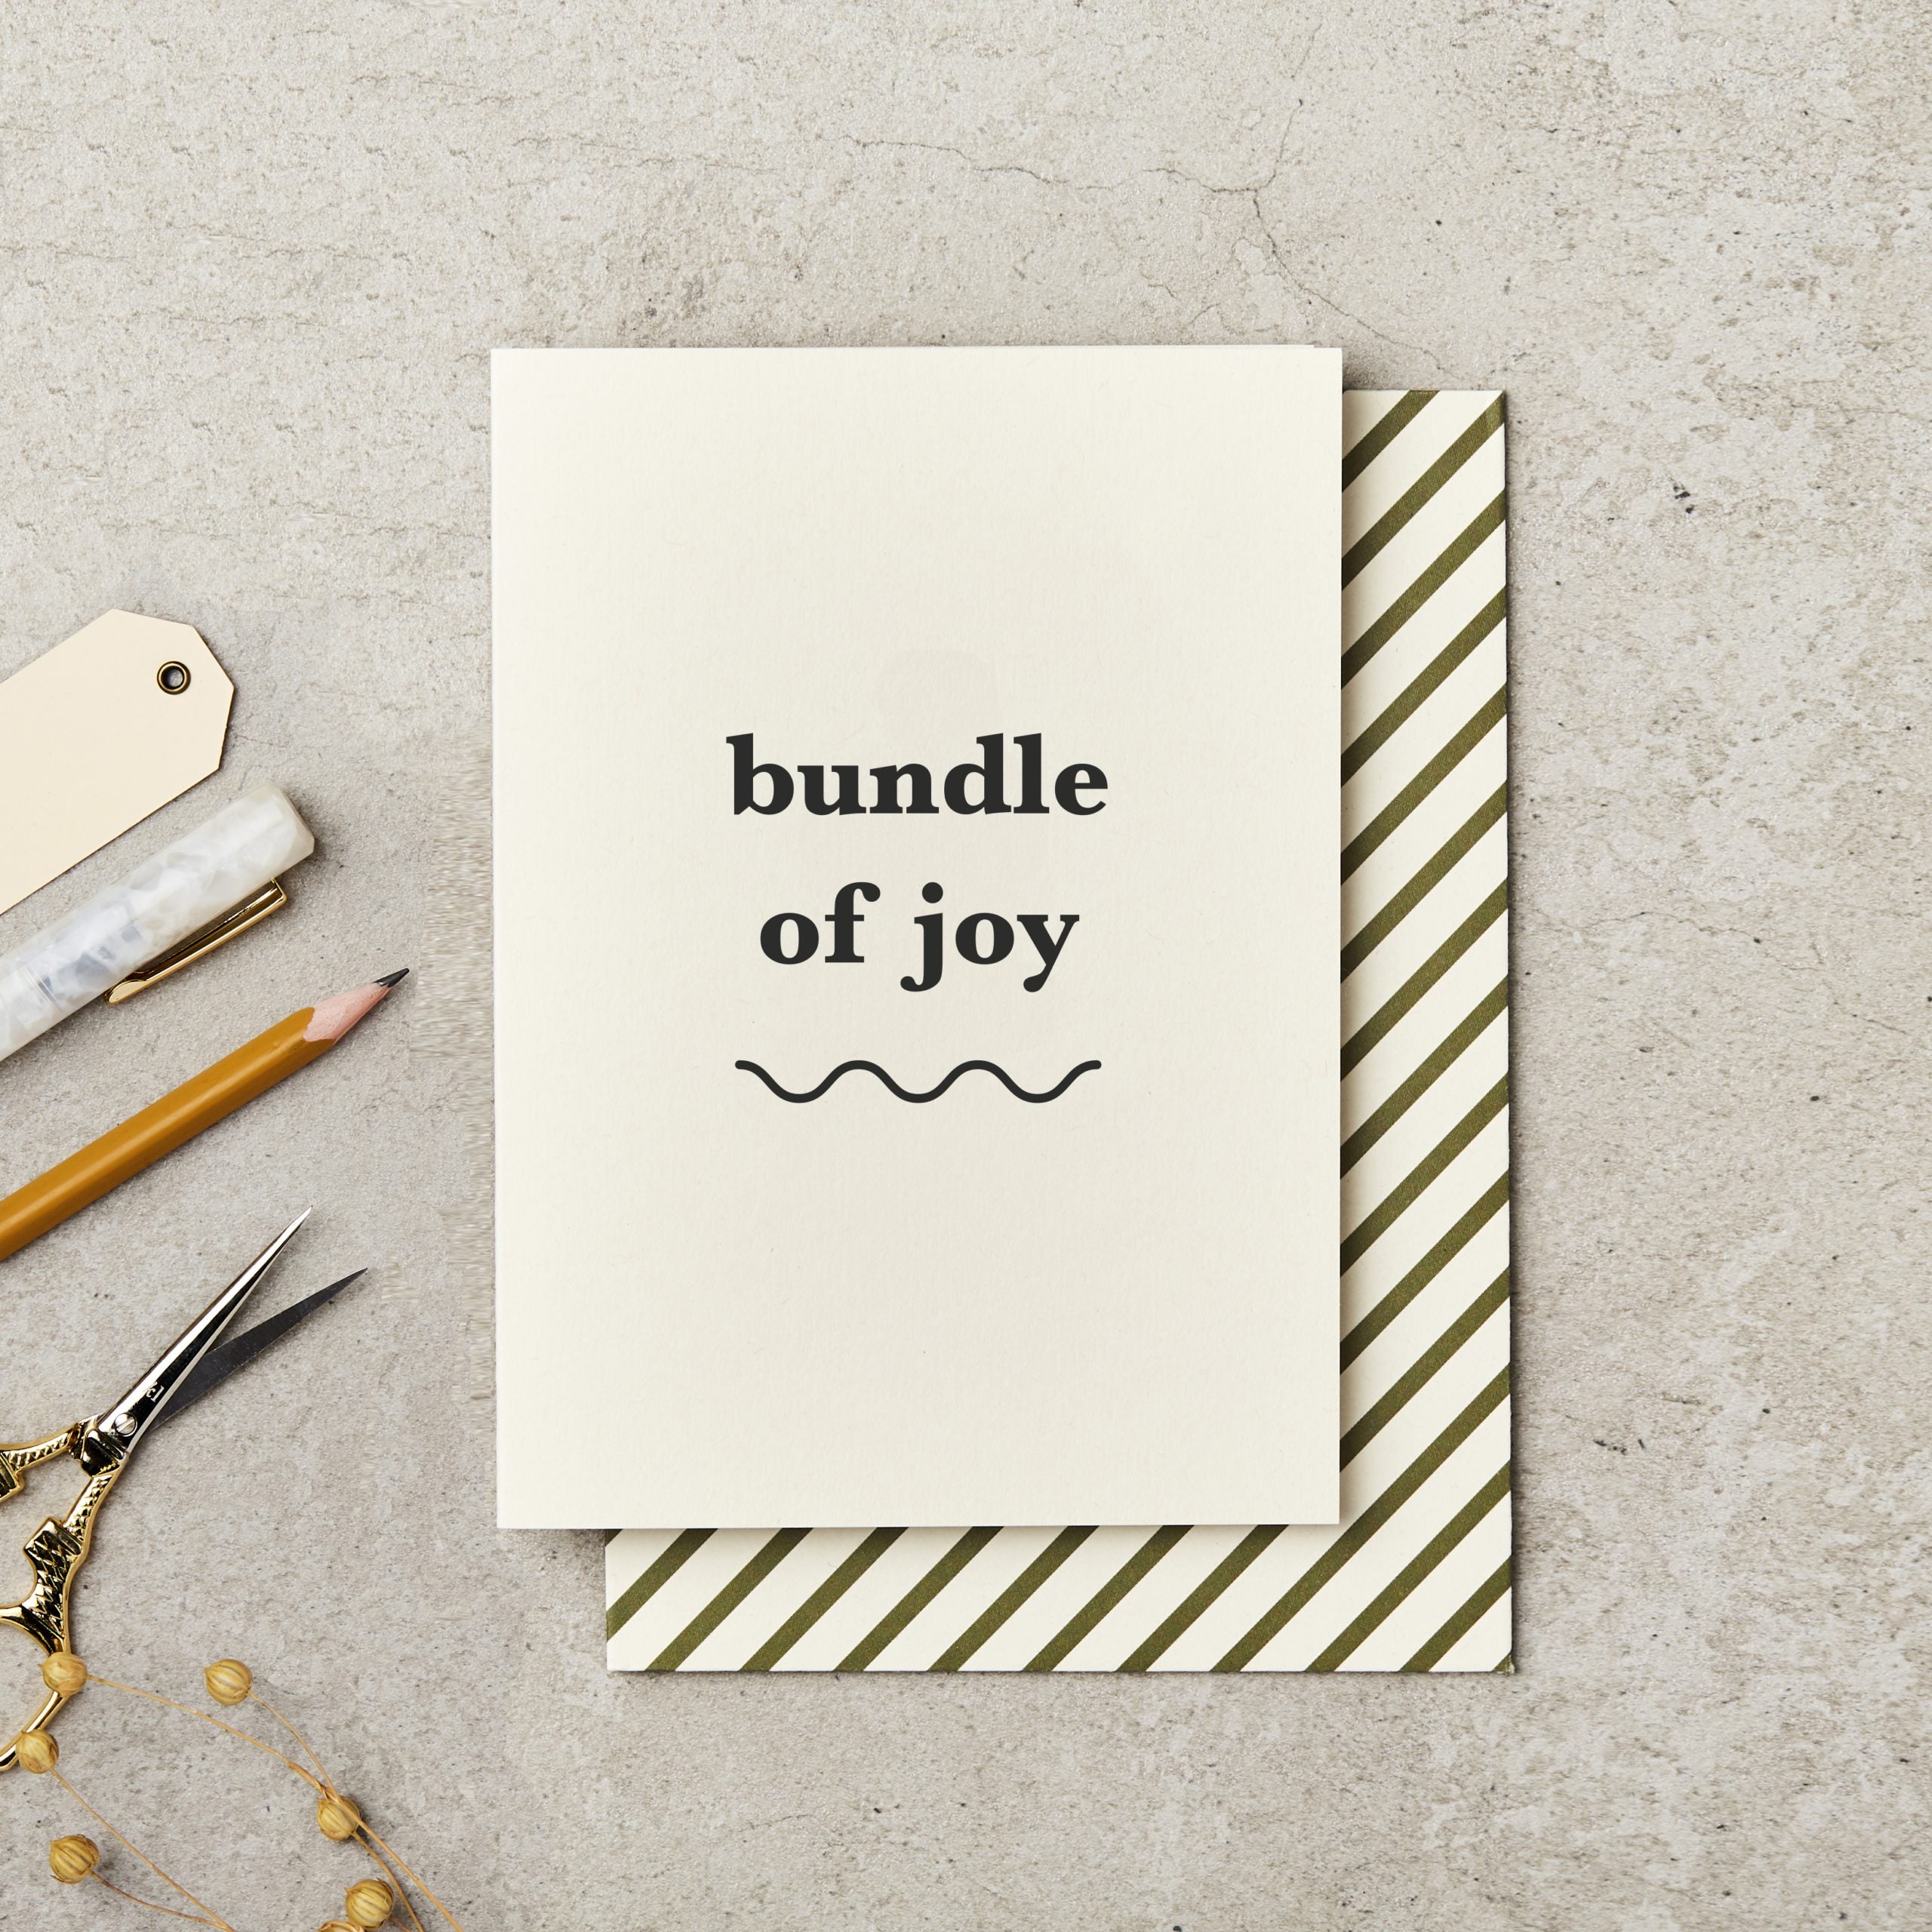 BUNDLE OF JOY | CARD BY KATIE LEAMON